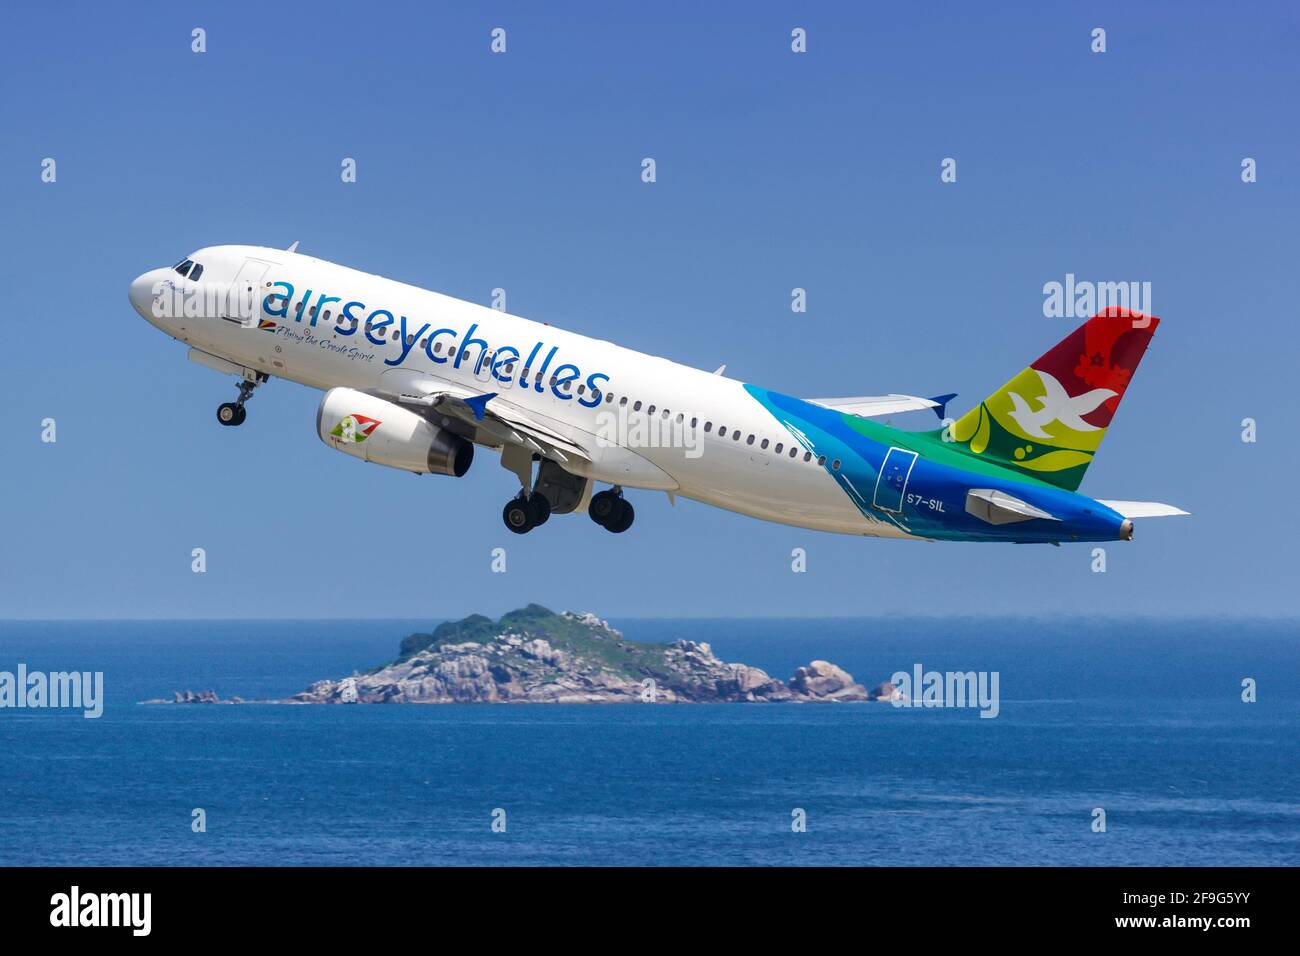 Mahé, Seychelles - 24 novembre 2017 : avion Airbus A320 d'Air Seychelles à l'aéroport international des Seychelles (SEZ) aux Seychelles. Airbus est une UE Banque D'Images